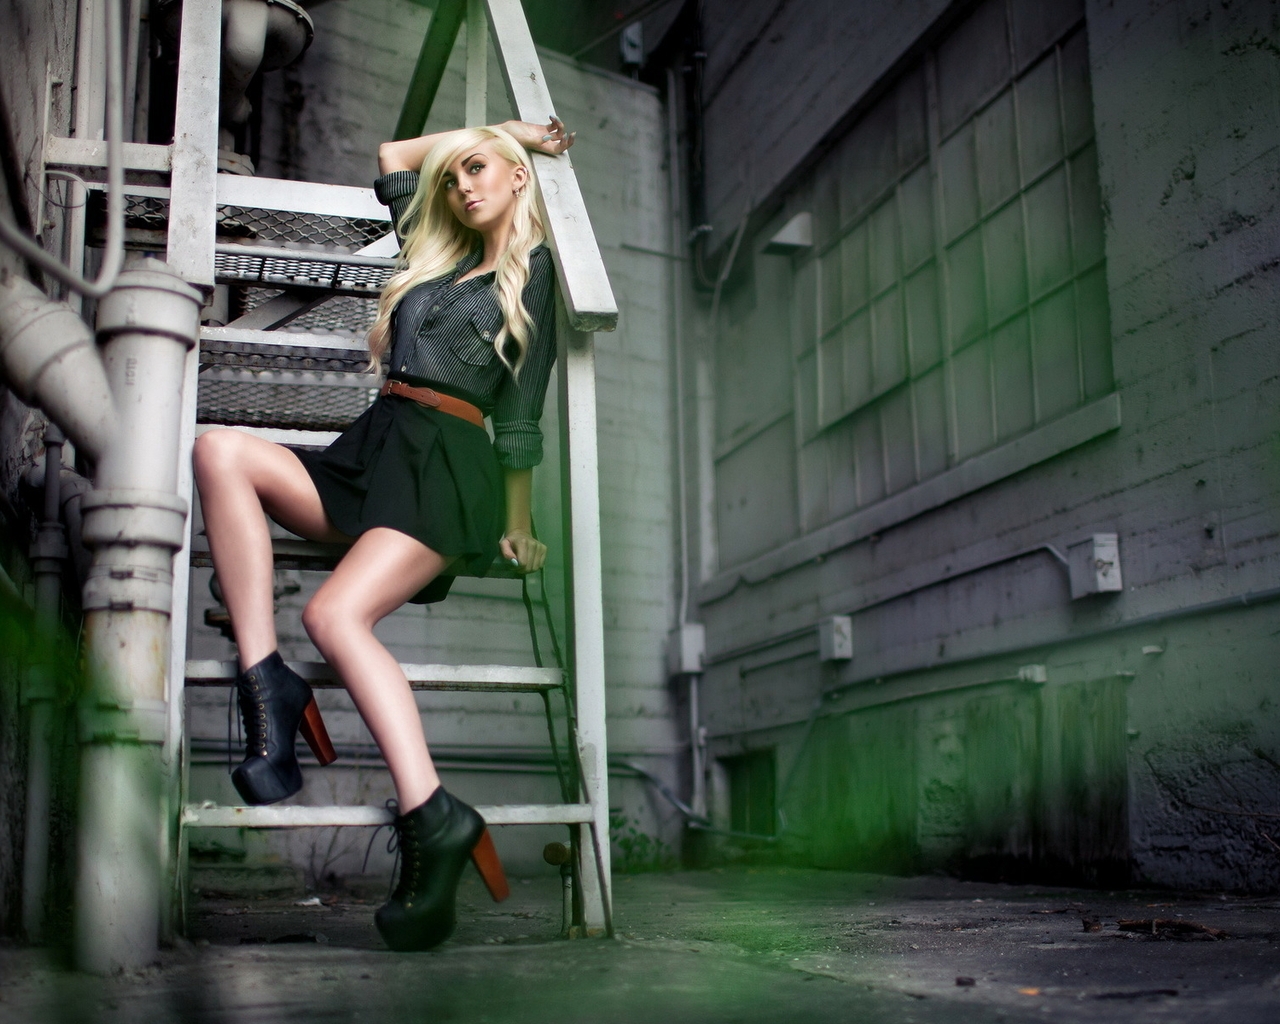 Image: Girl, blonde, sitting, staircase, boots, heels, platform, posing, lane